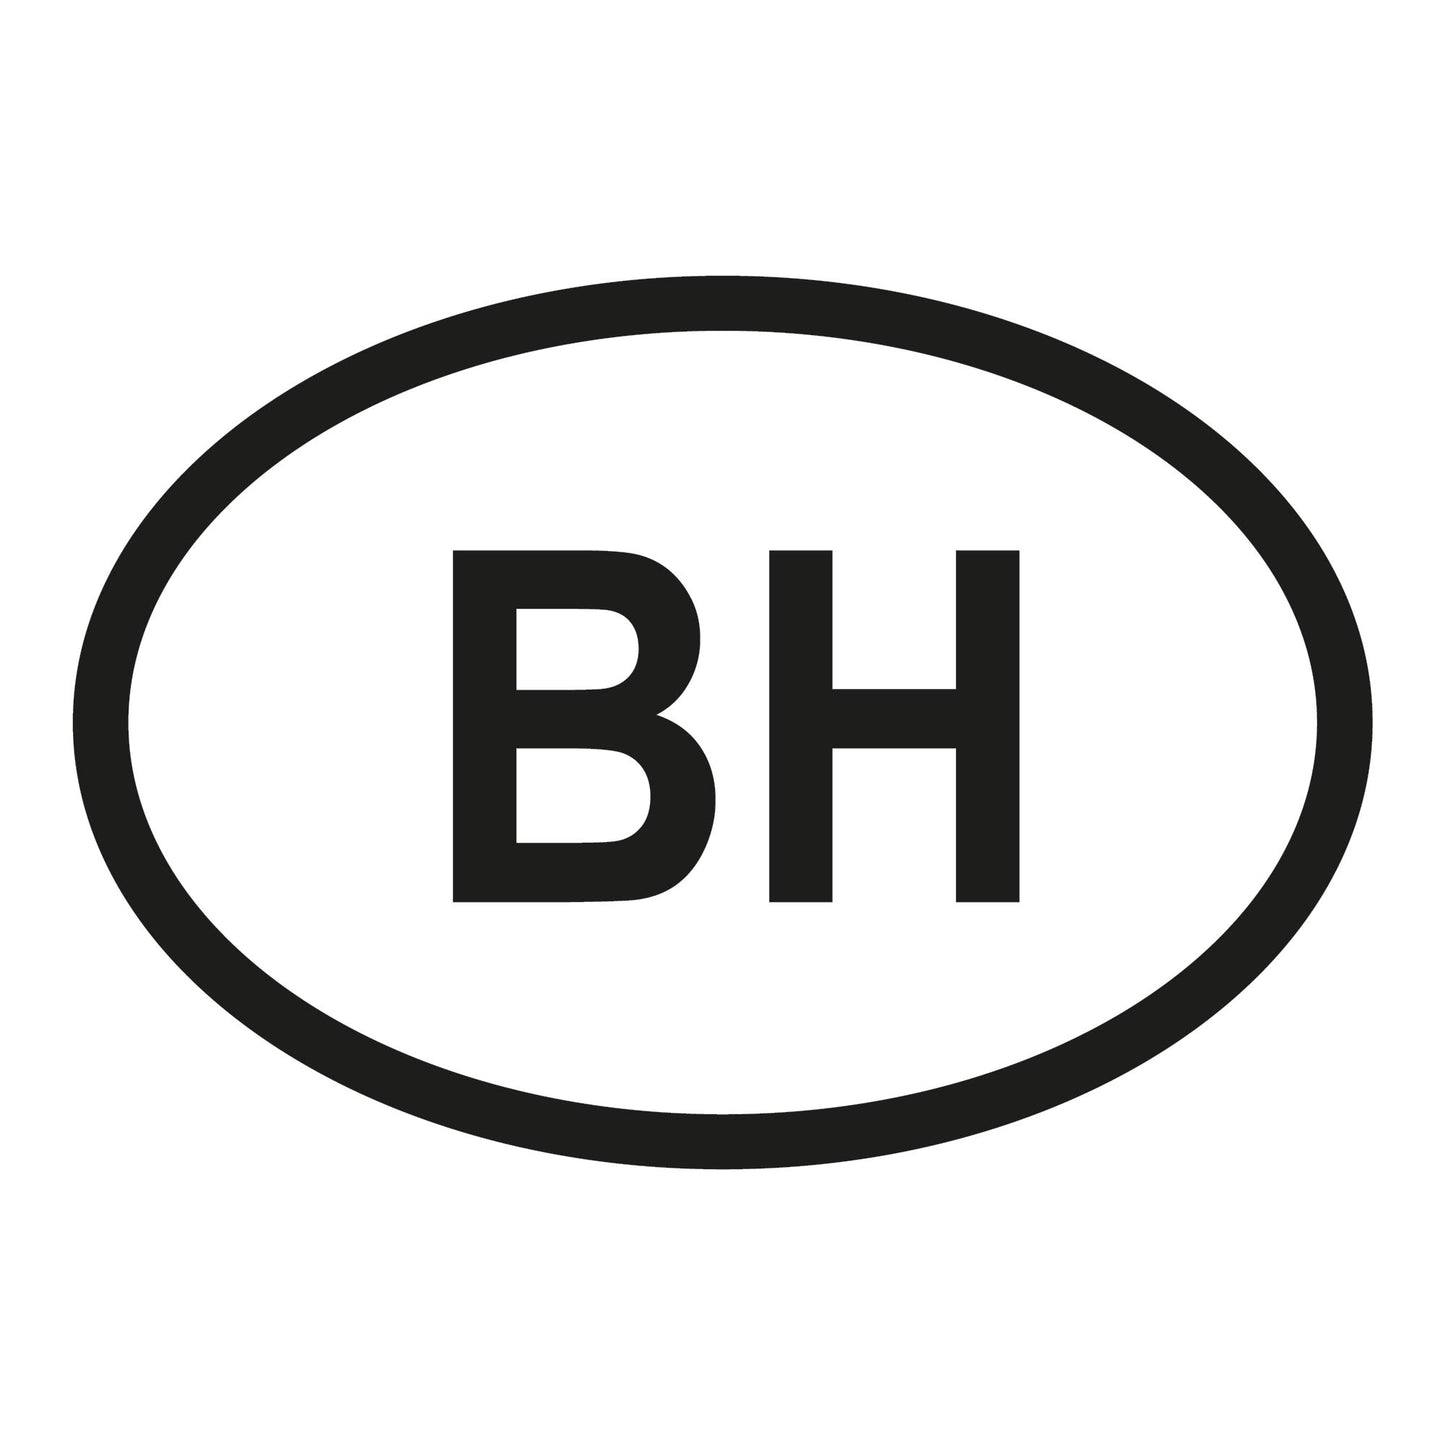 Autoaufkleber - Bahrain BH - 160x110mm